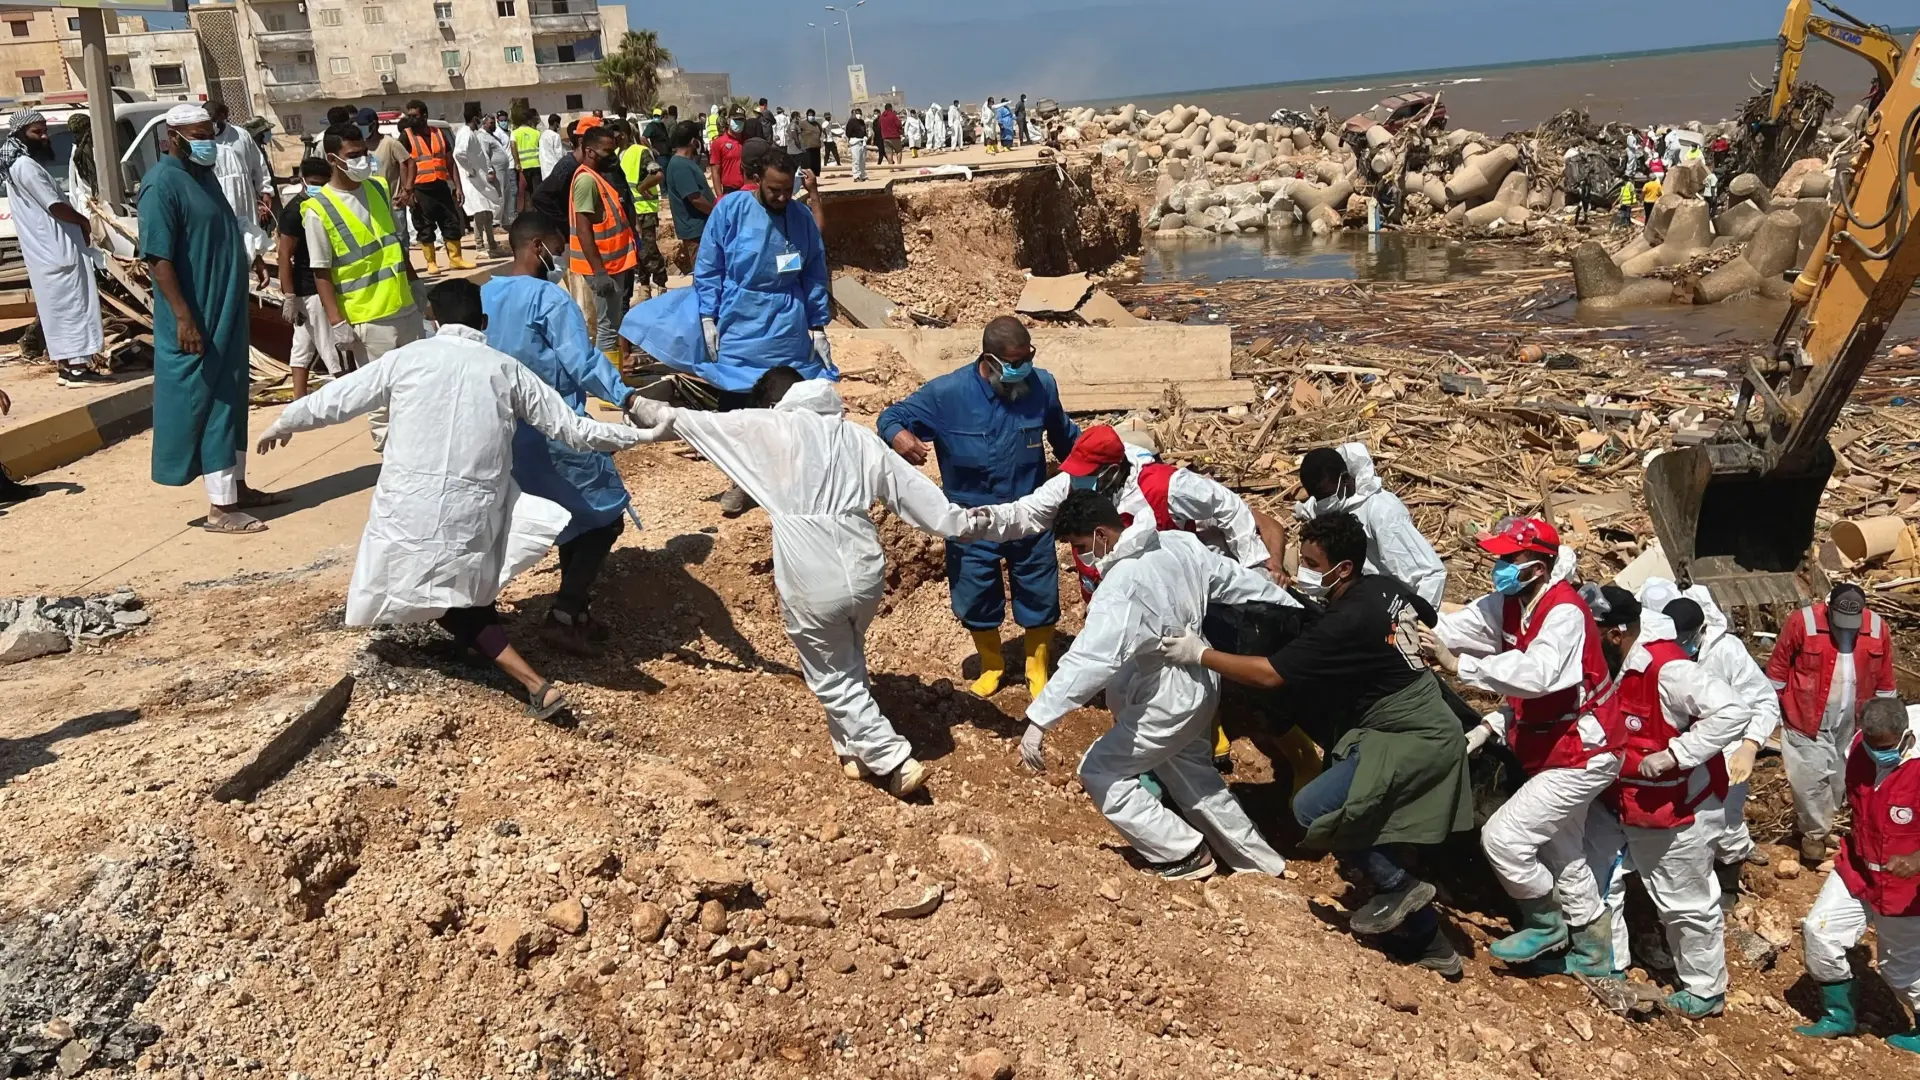 تداعيات إعصار ليبيا.. إحالة المجلس البلدي في درنة للتحقيق وإصدار قرار بإقالته